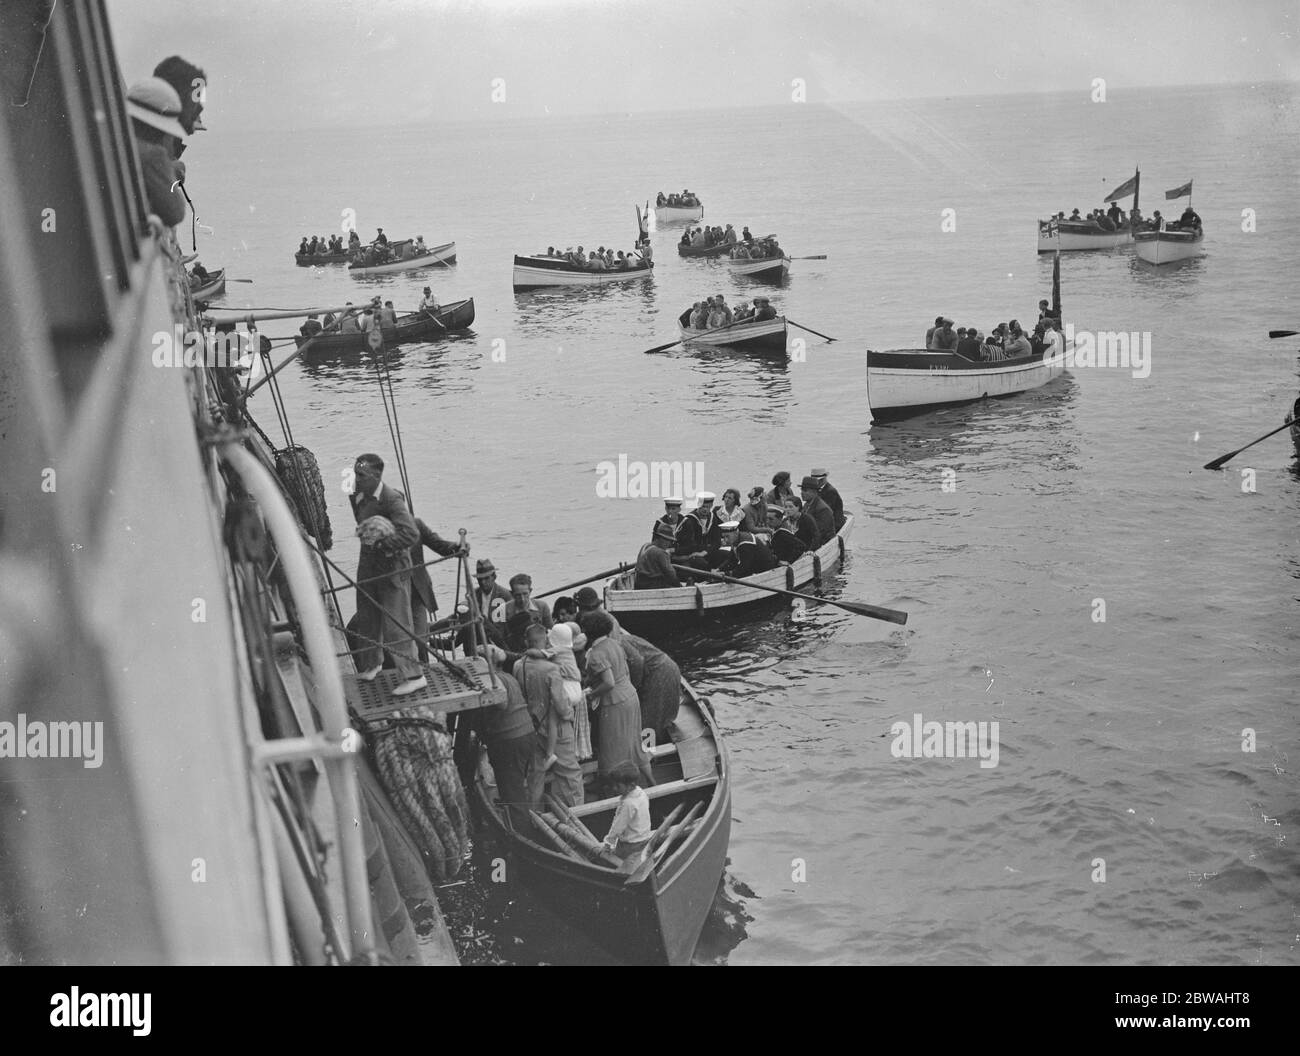 Keine weiteren Informationen verfügbar Reihenboote bringen Passagiere zu einem Ozeandampfer vor Anker. um 1920 Stockfoto